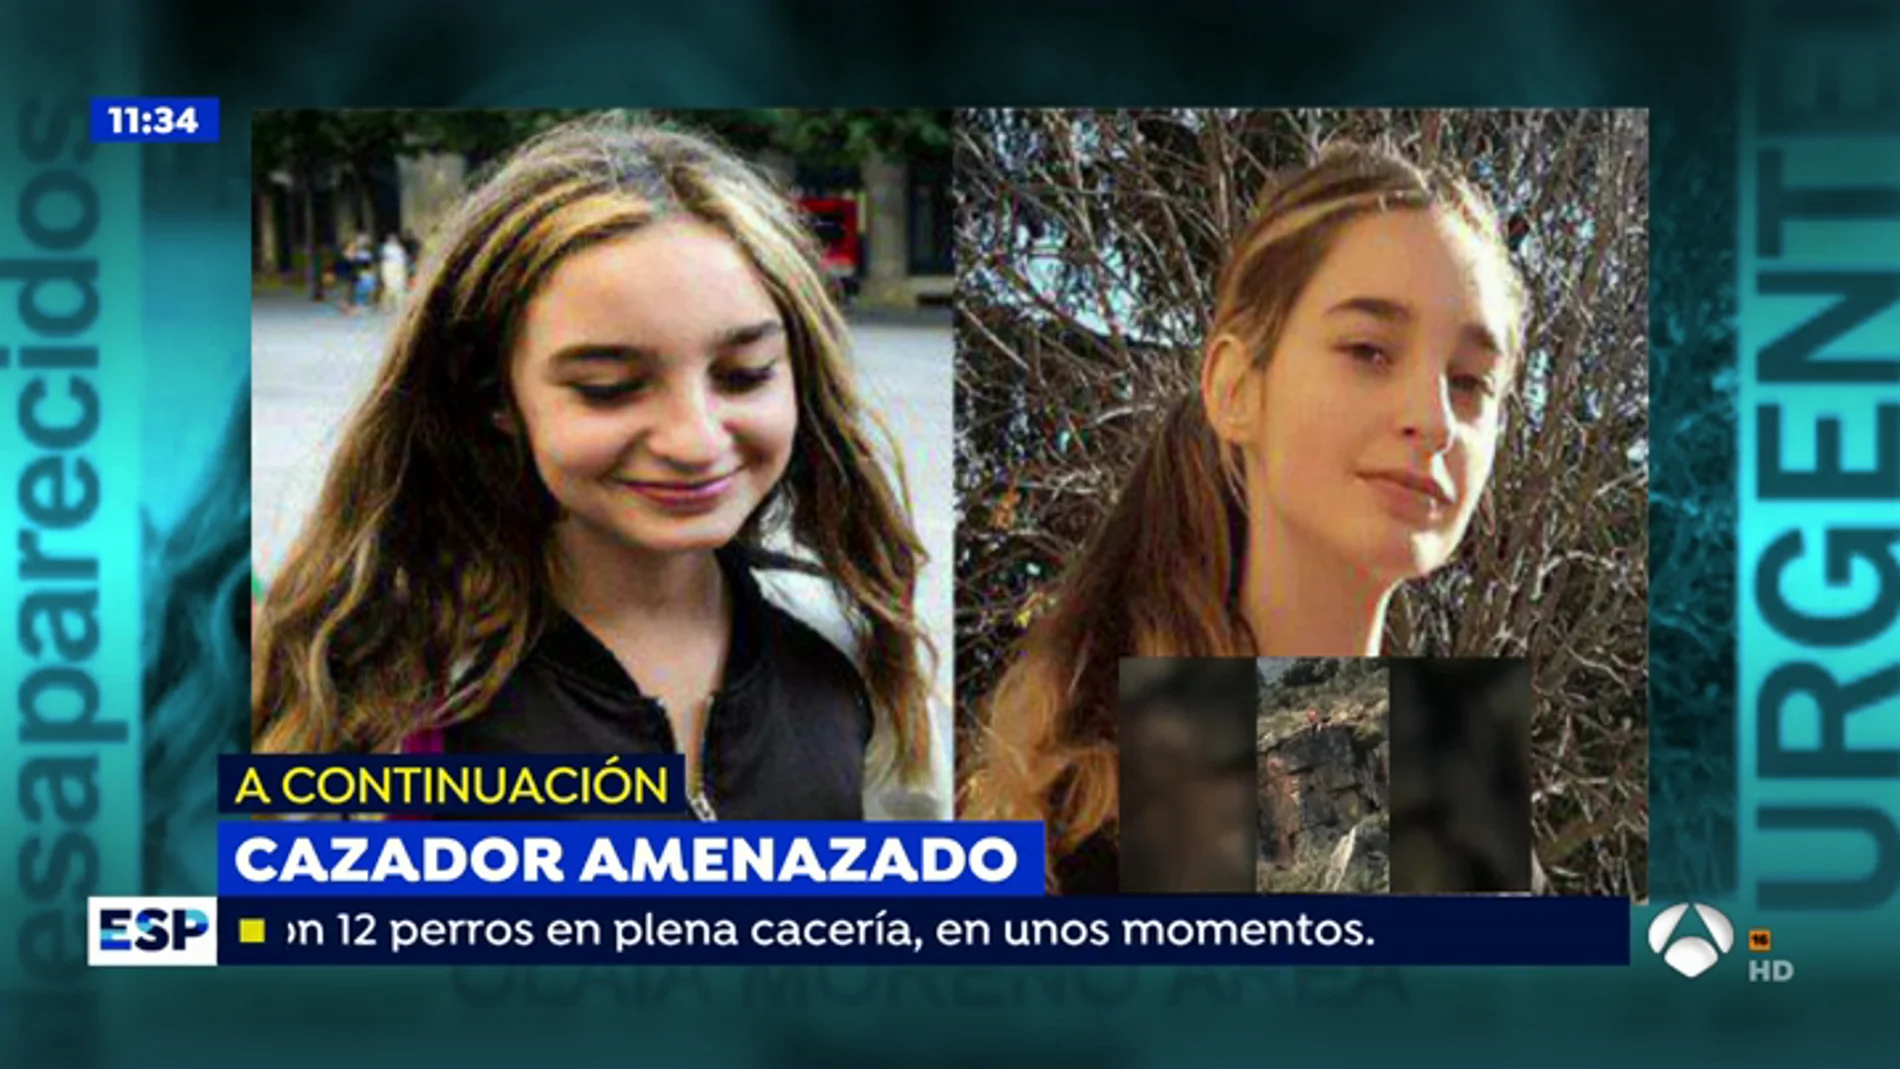 La madre de la niña de 15 años que ha desaparecido en Navarra: "Mi hija estaba muy dispersa en amistades, las redes sociale son un monstruo"